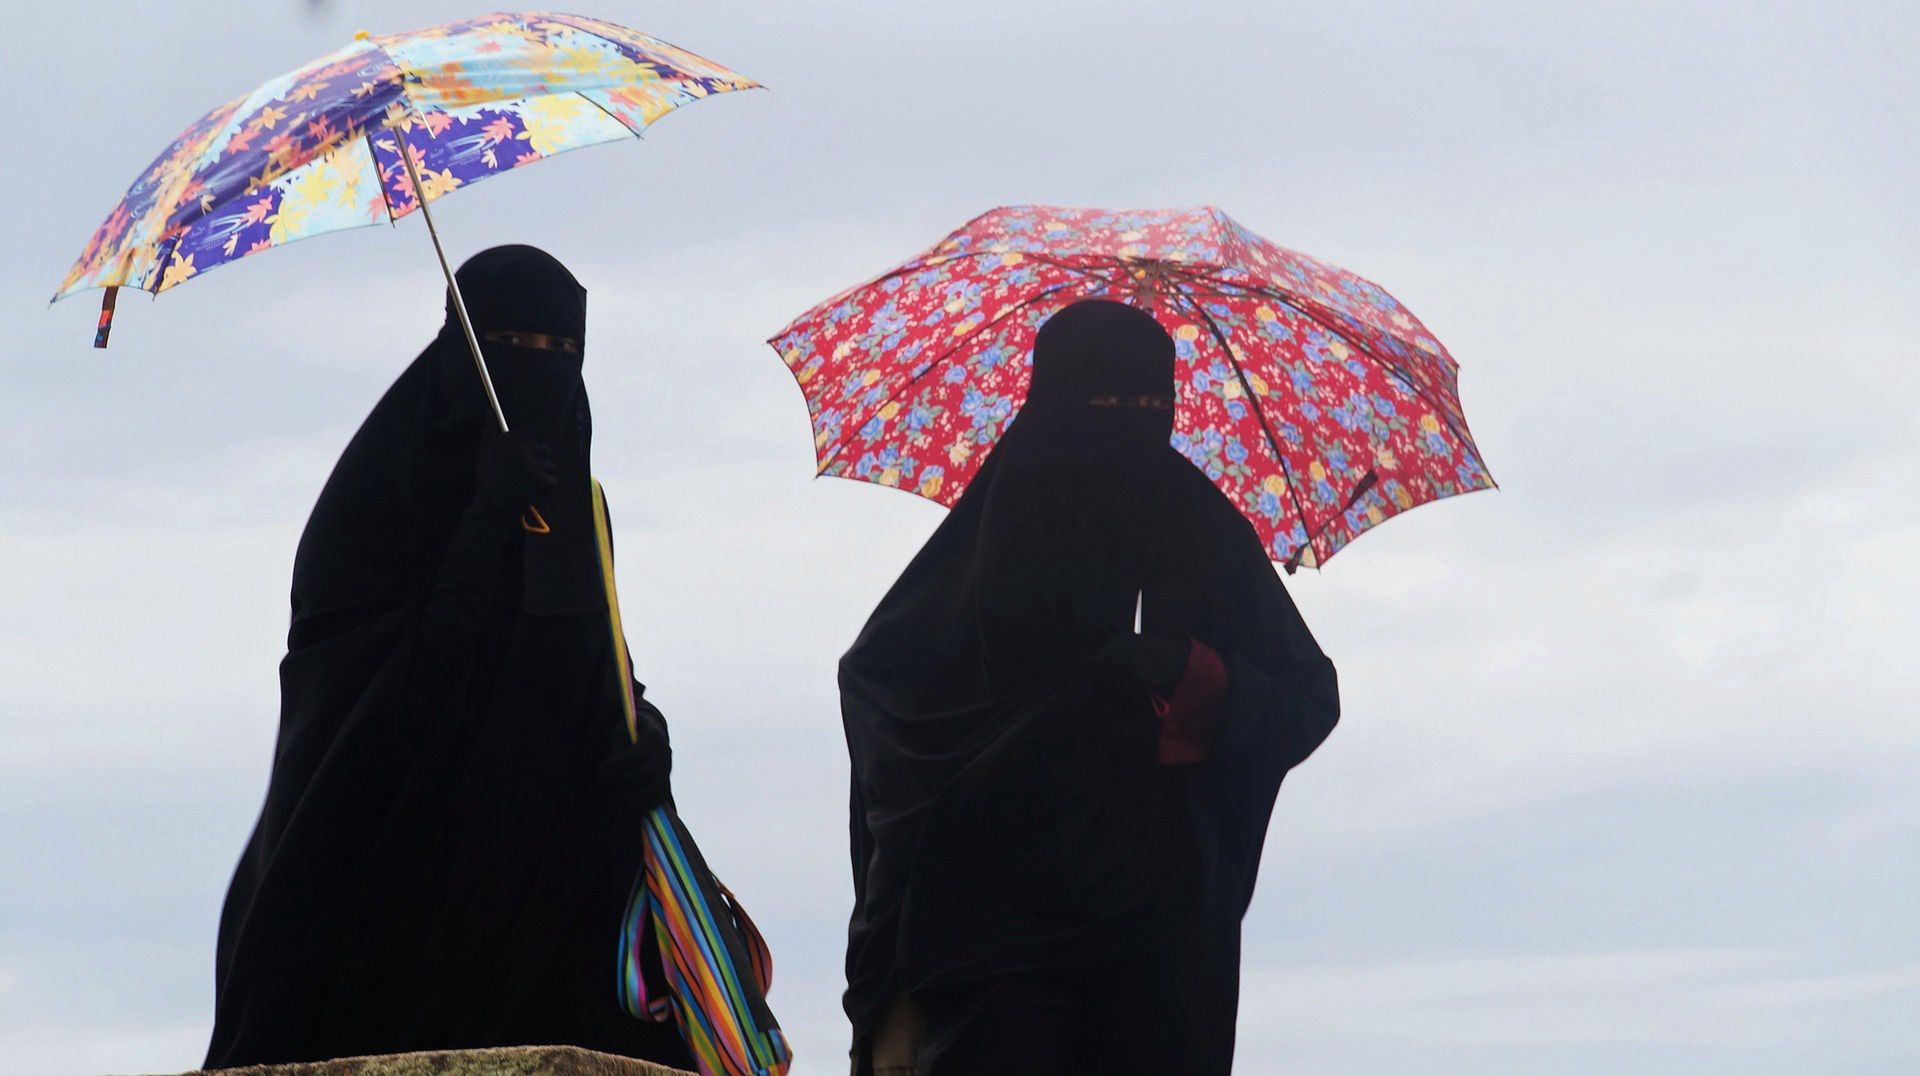 Prostytutki w Afganistanie. Potworne doniesienia brytyjskich mediów